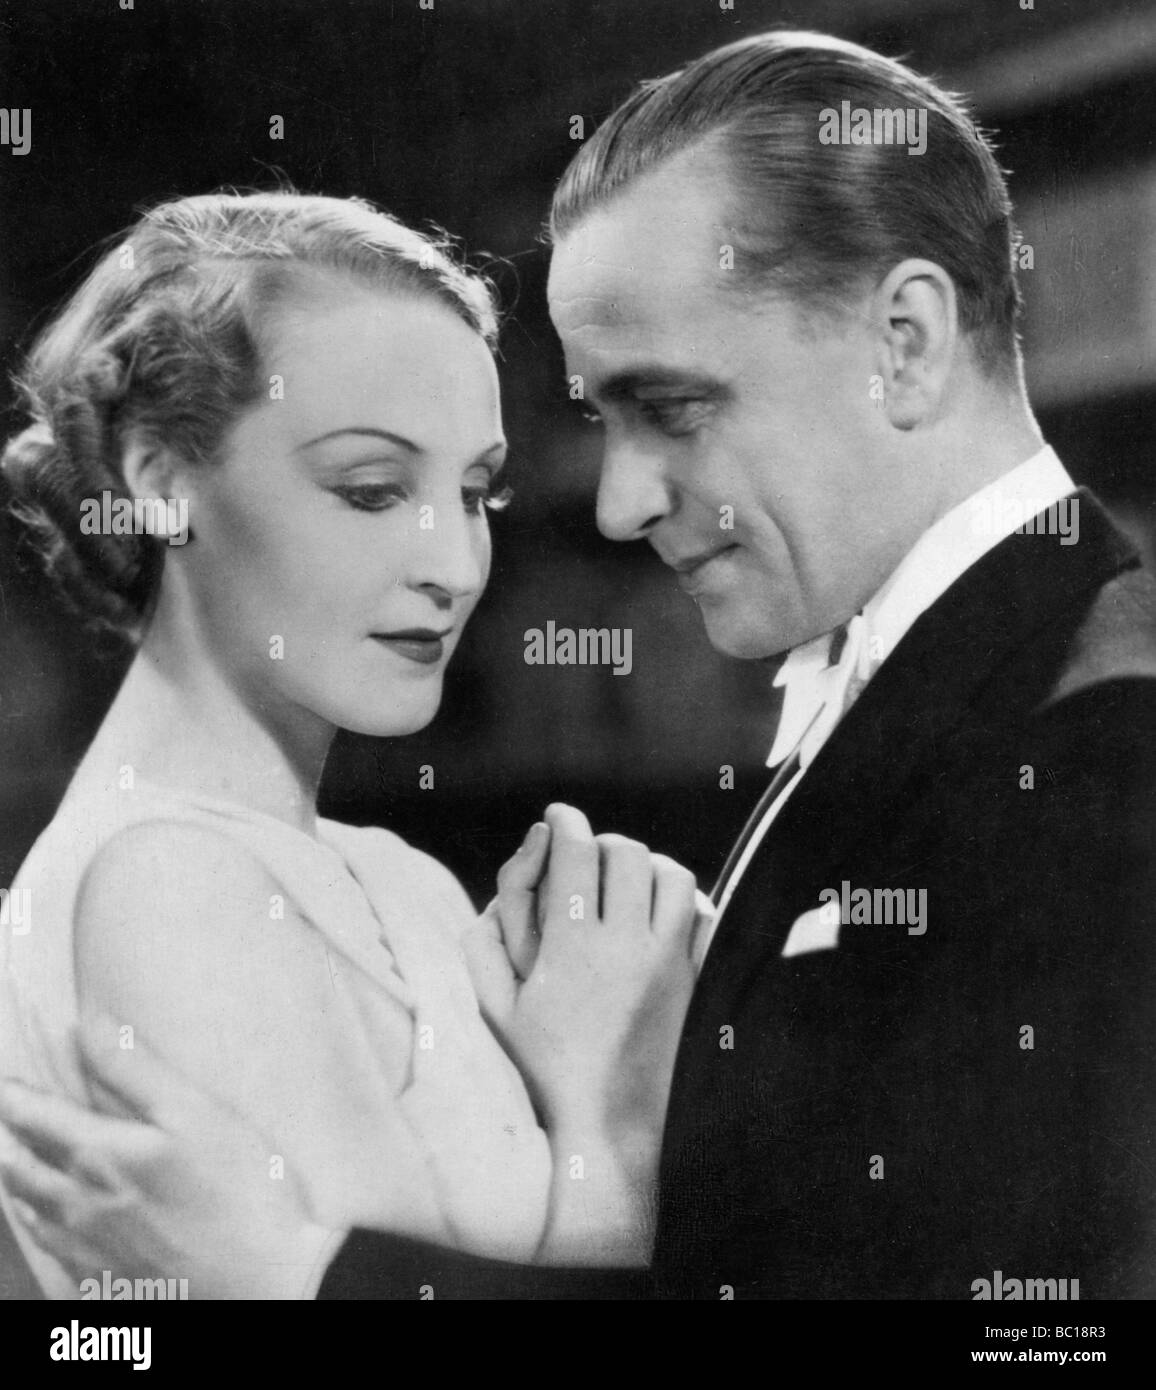 Brigitte Helm y Karl Ludwig Diehl, actores del cine alemán, 1930. Artista: Desconocido Foto de stock